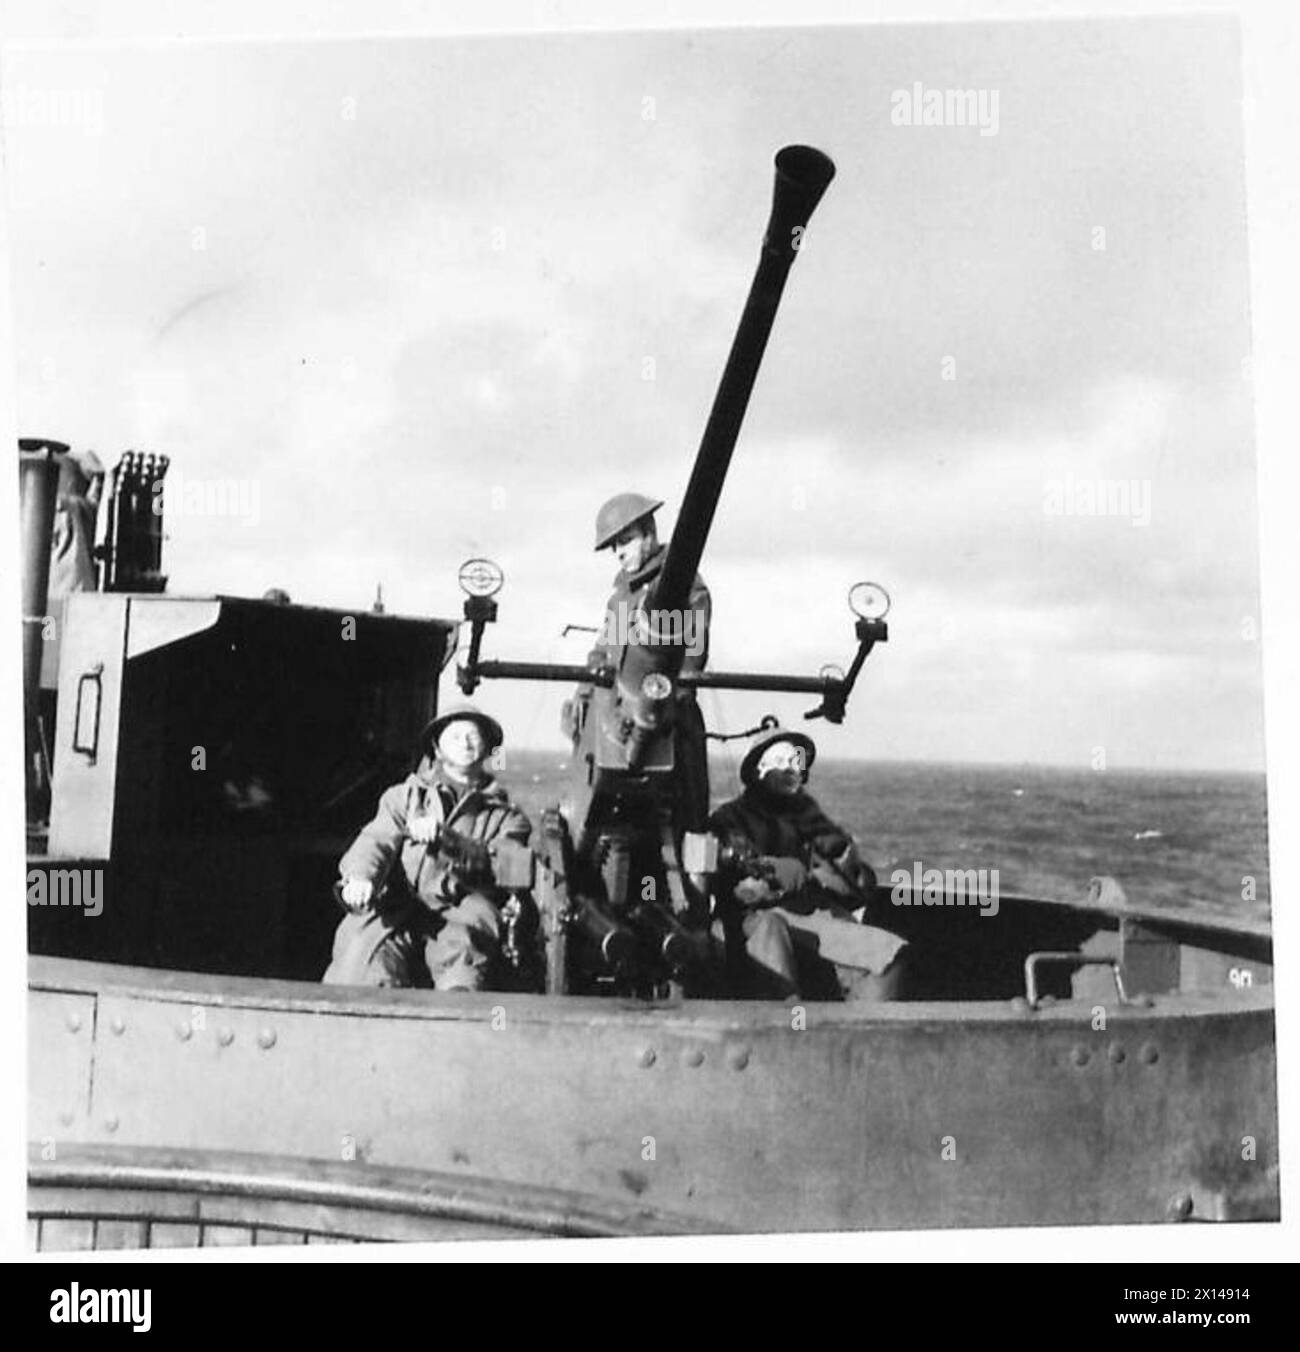 L'OPERAZIONE TORCIA, NOVEMBRE 1942 - cannoni antiaerei equipaggiati con un cannone Bofors da 40 mm a bordo della nave da trasporto olandese SS Dempo sulla strada per il Nord Africa francese, 9 novembre 1942. Notate i cappotti Duffle che indossano la Marina olandese, la Marina reale Foto Stock